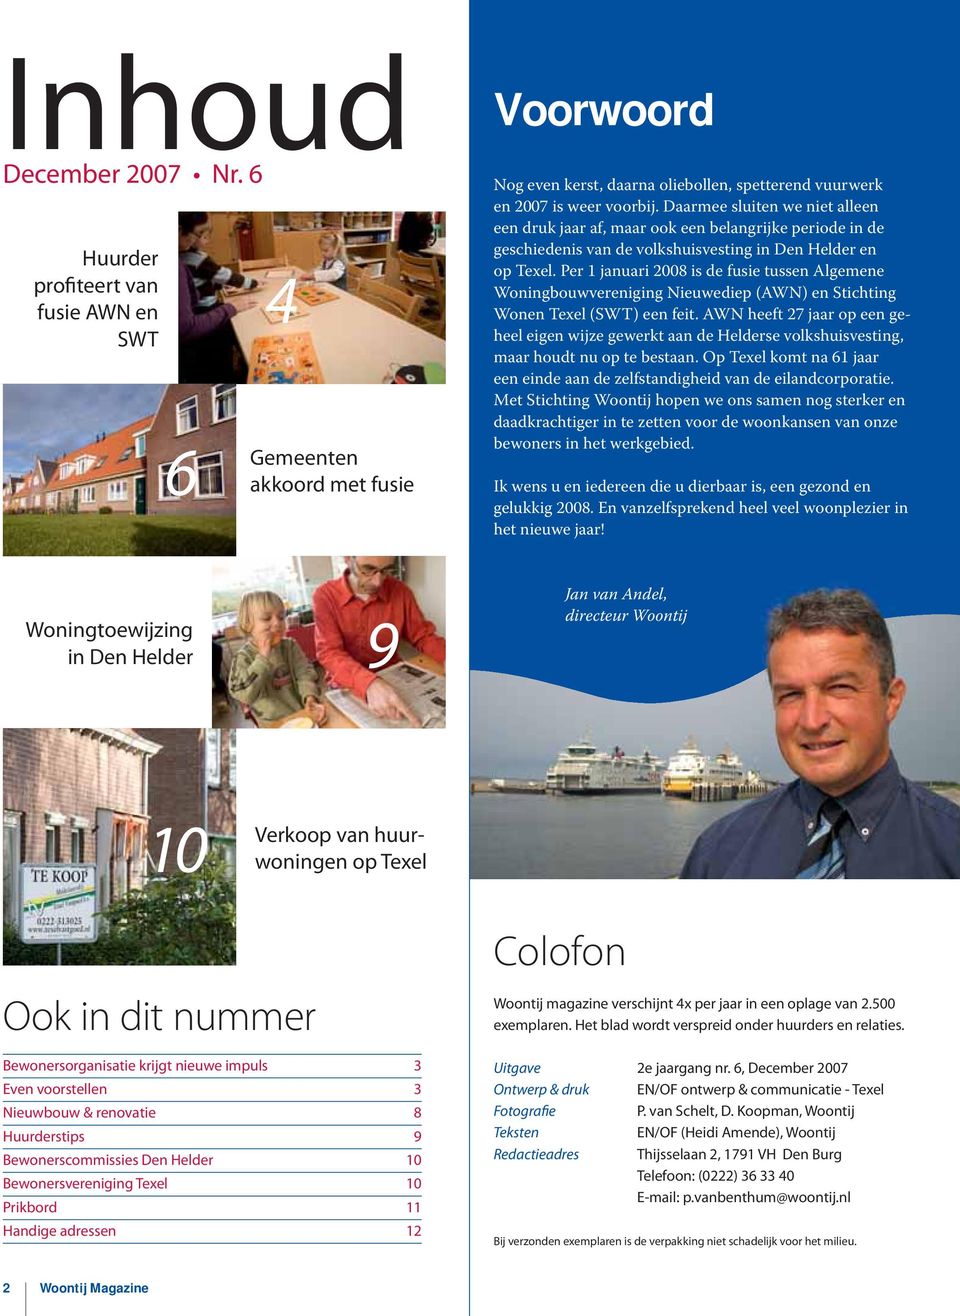 Per 1 januari 2008 is de fusie tussen Algemene Woningbouwvereniging Nieuwediep (AWN) en Stichting Wonen Texel (SWT) een feit.